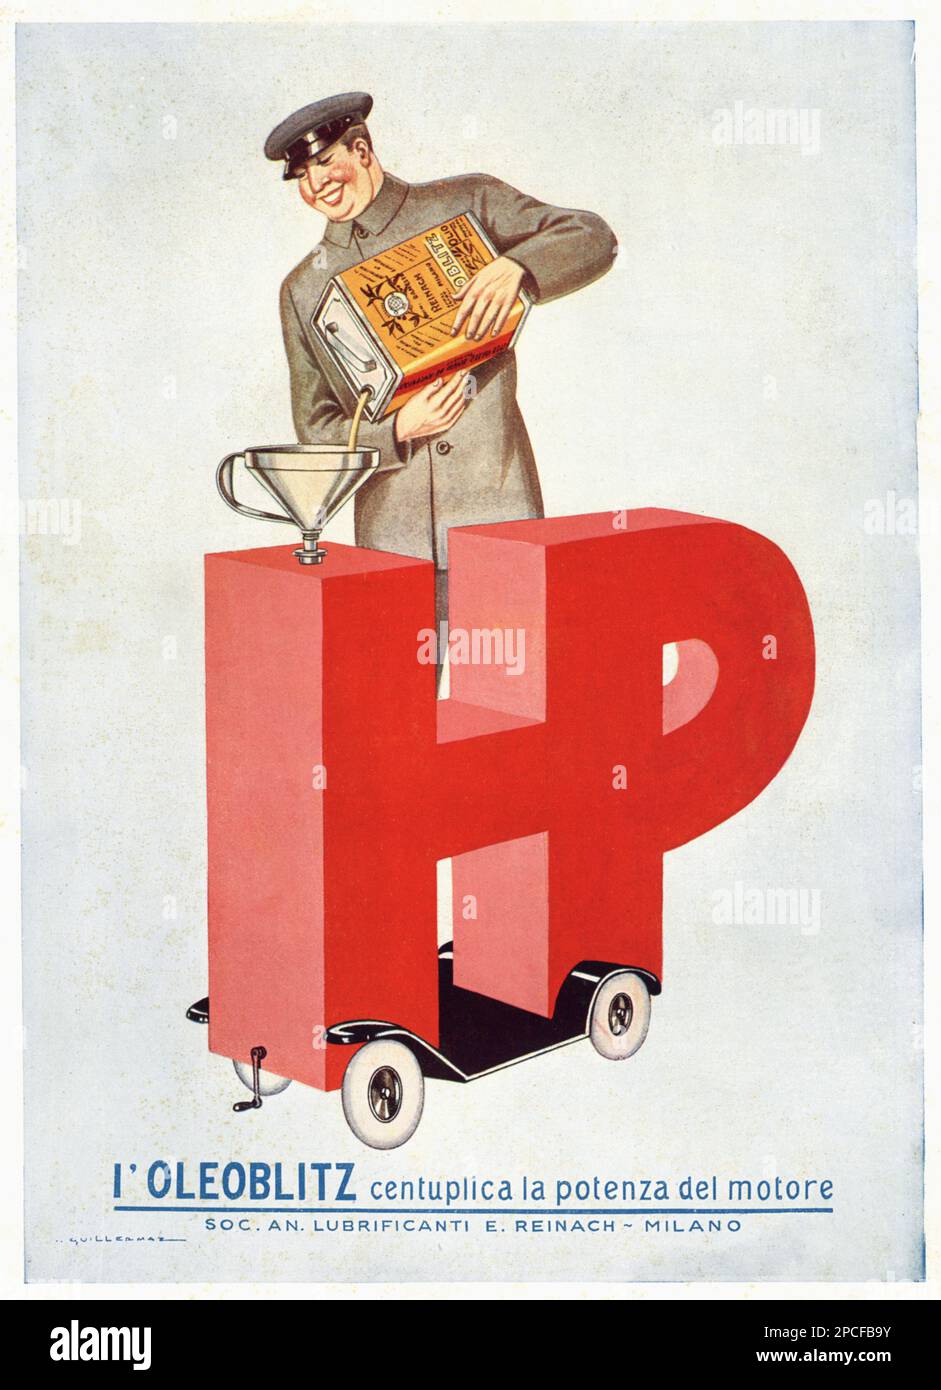 1928, ITALY  : italian advertising poster by HP OLEOBLITZ , Società  Lubrificanti E. Reinach , Milano, oil for cars  Lubrificant . - AUTOMOBILI - OLIO LUBRIFICANTE - AUTOMOBILISMO  - PUBBLICITA' - foto storiche - foto storica - HISTORY - PETROLIO - INDUSTRIA PETROLIFERA - ILLUSTRAZIONE - ILLUSTRRATION - CAR - AUTOMOBILE - ANNI VENTI - 20's - '20  -----  Archivio GBB Stock Photo